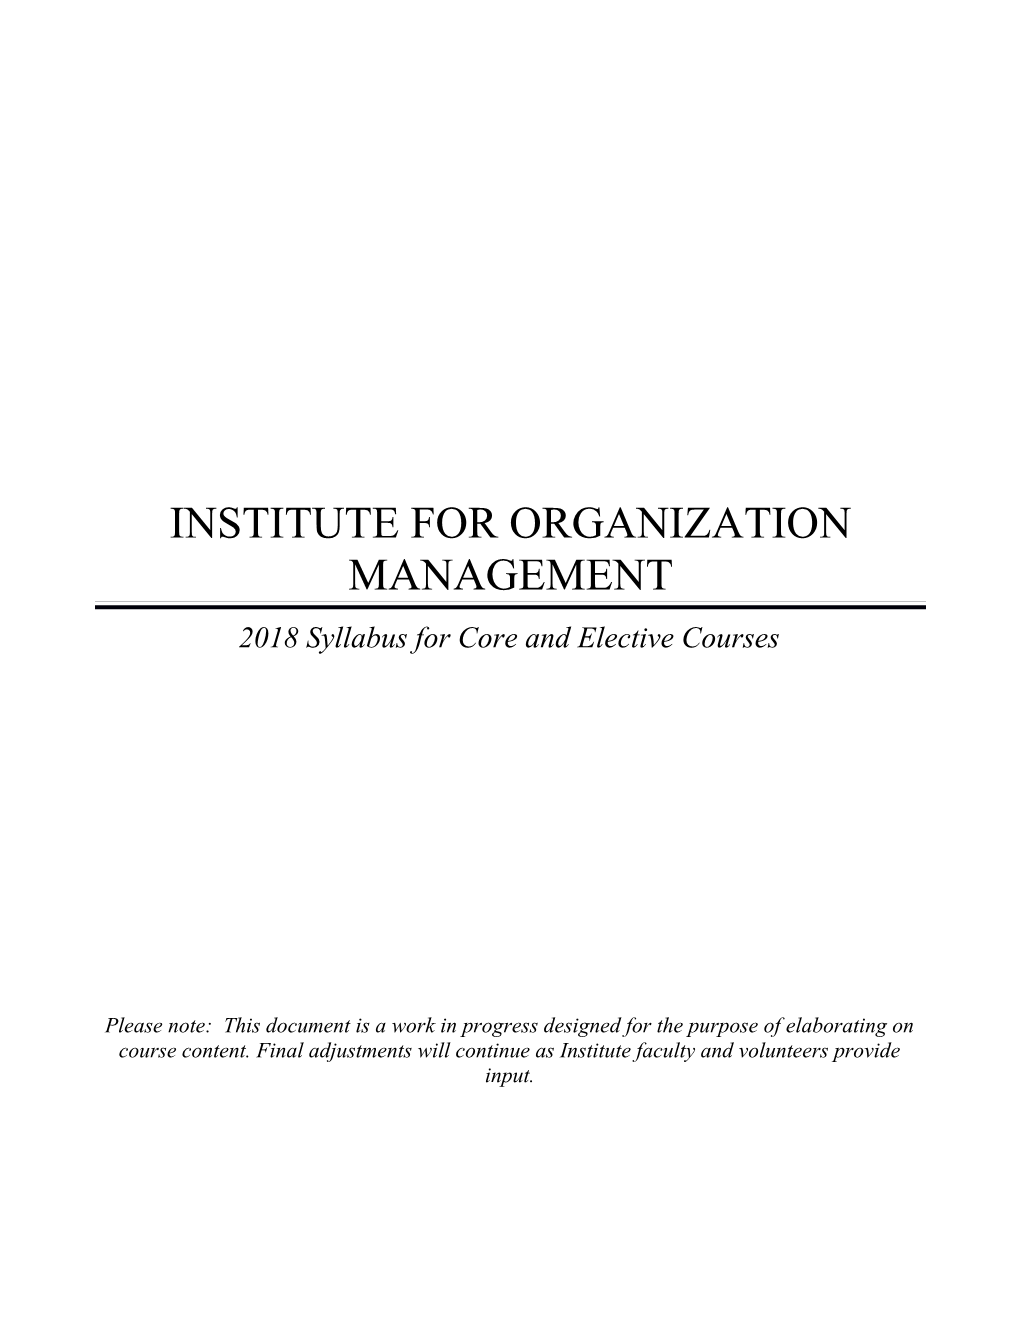 Institute for Organizational Management (Iom) 2007